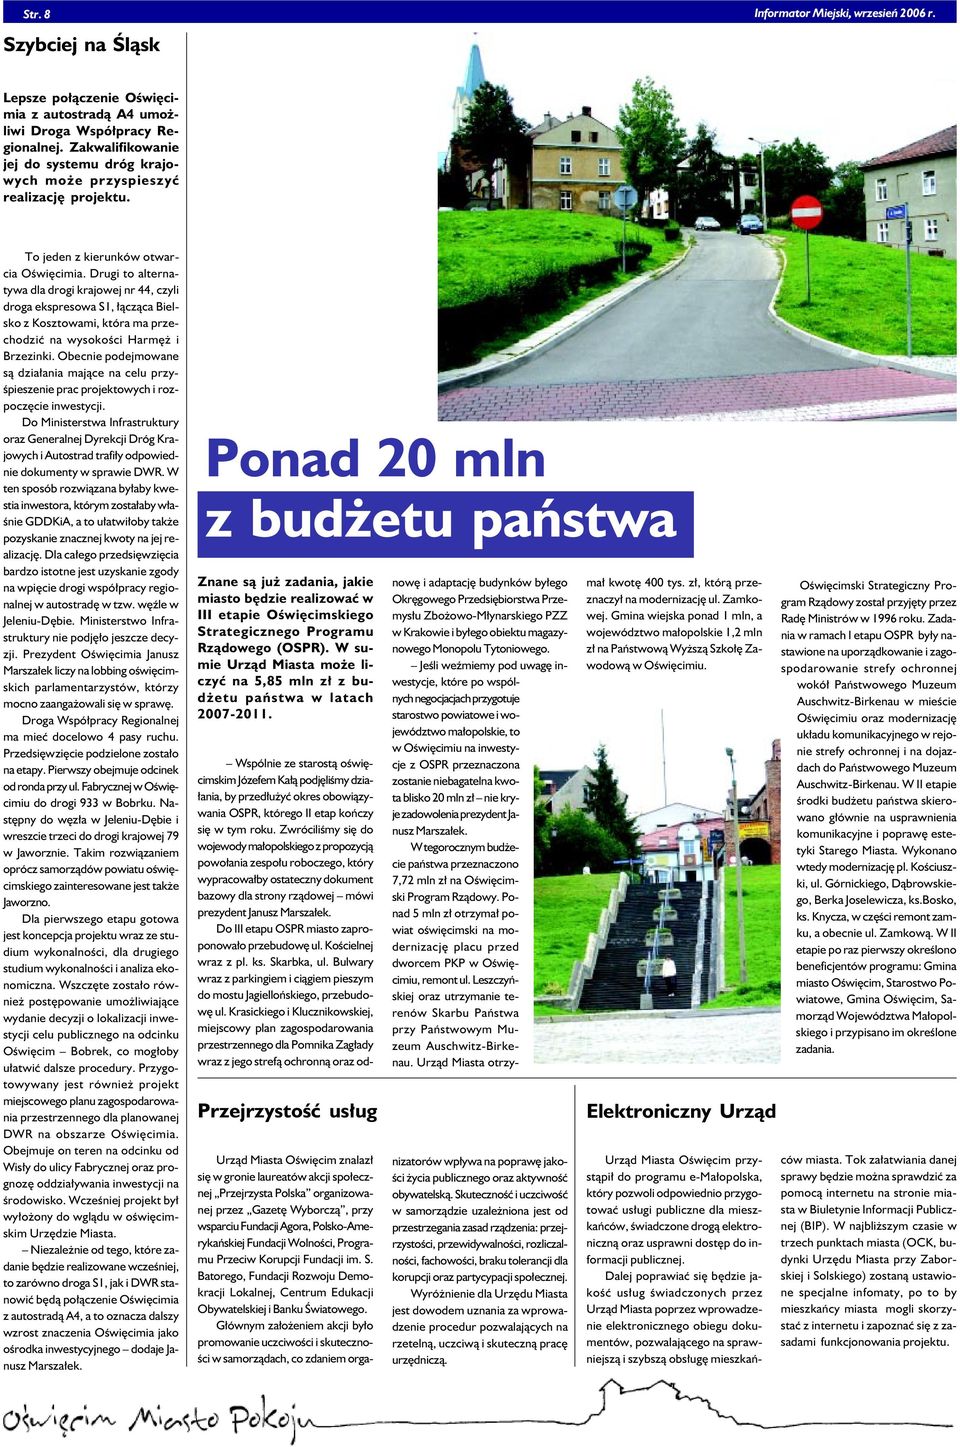 Drugi to alternatywa dla drogi krajowej nr 44, czyli droga ekspresowa S1, łącząca Bielsko z Kosztowami, która ma przechodzić na wysokości Harmęż i Brzezinki.